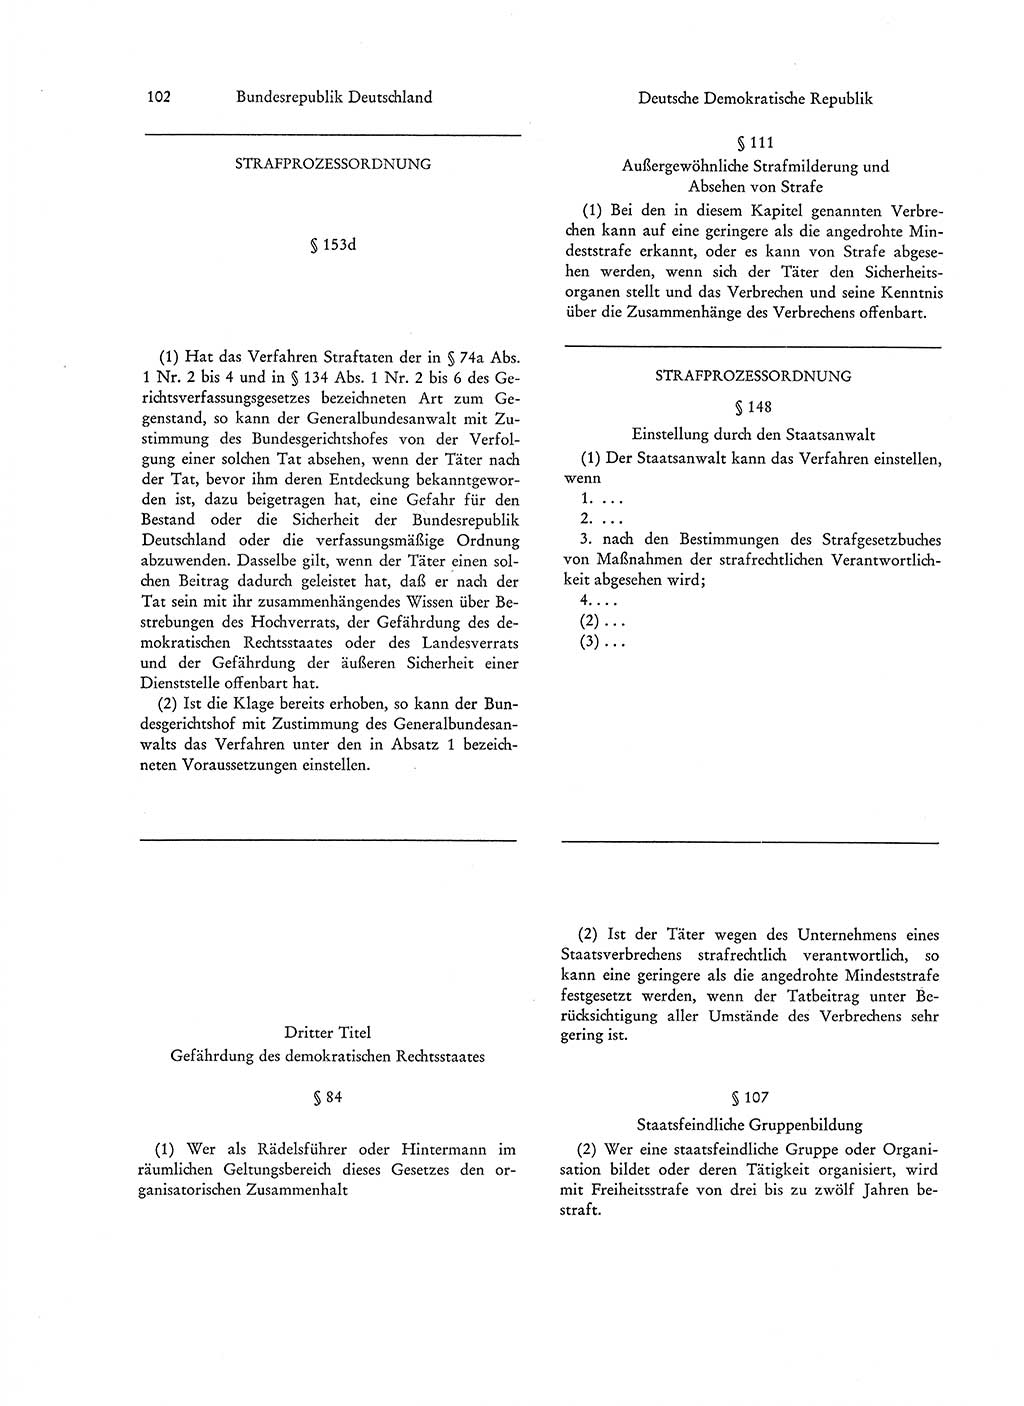 Strafgesetzgebung in Deutschland [Bundesrepublik Deutschland (BRD) und Deutsche Demokratische Republik (DDR)] 1972, Seite 102 (Str.-Ges. Dtl. StGB BRD DDR 1972, S. 102)